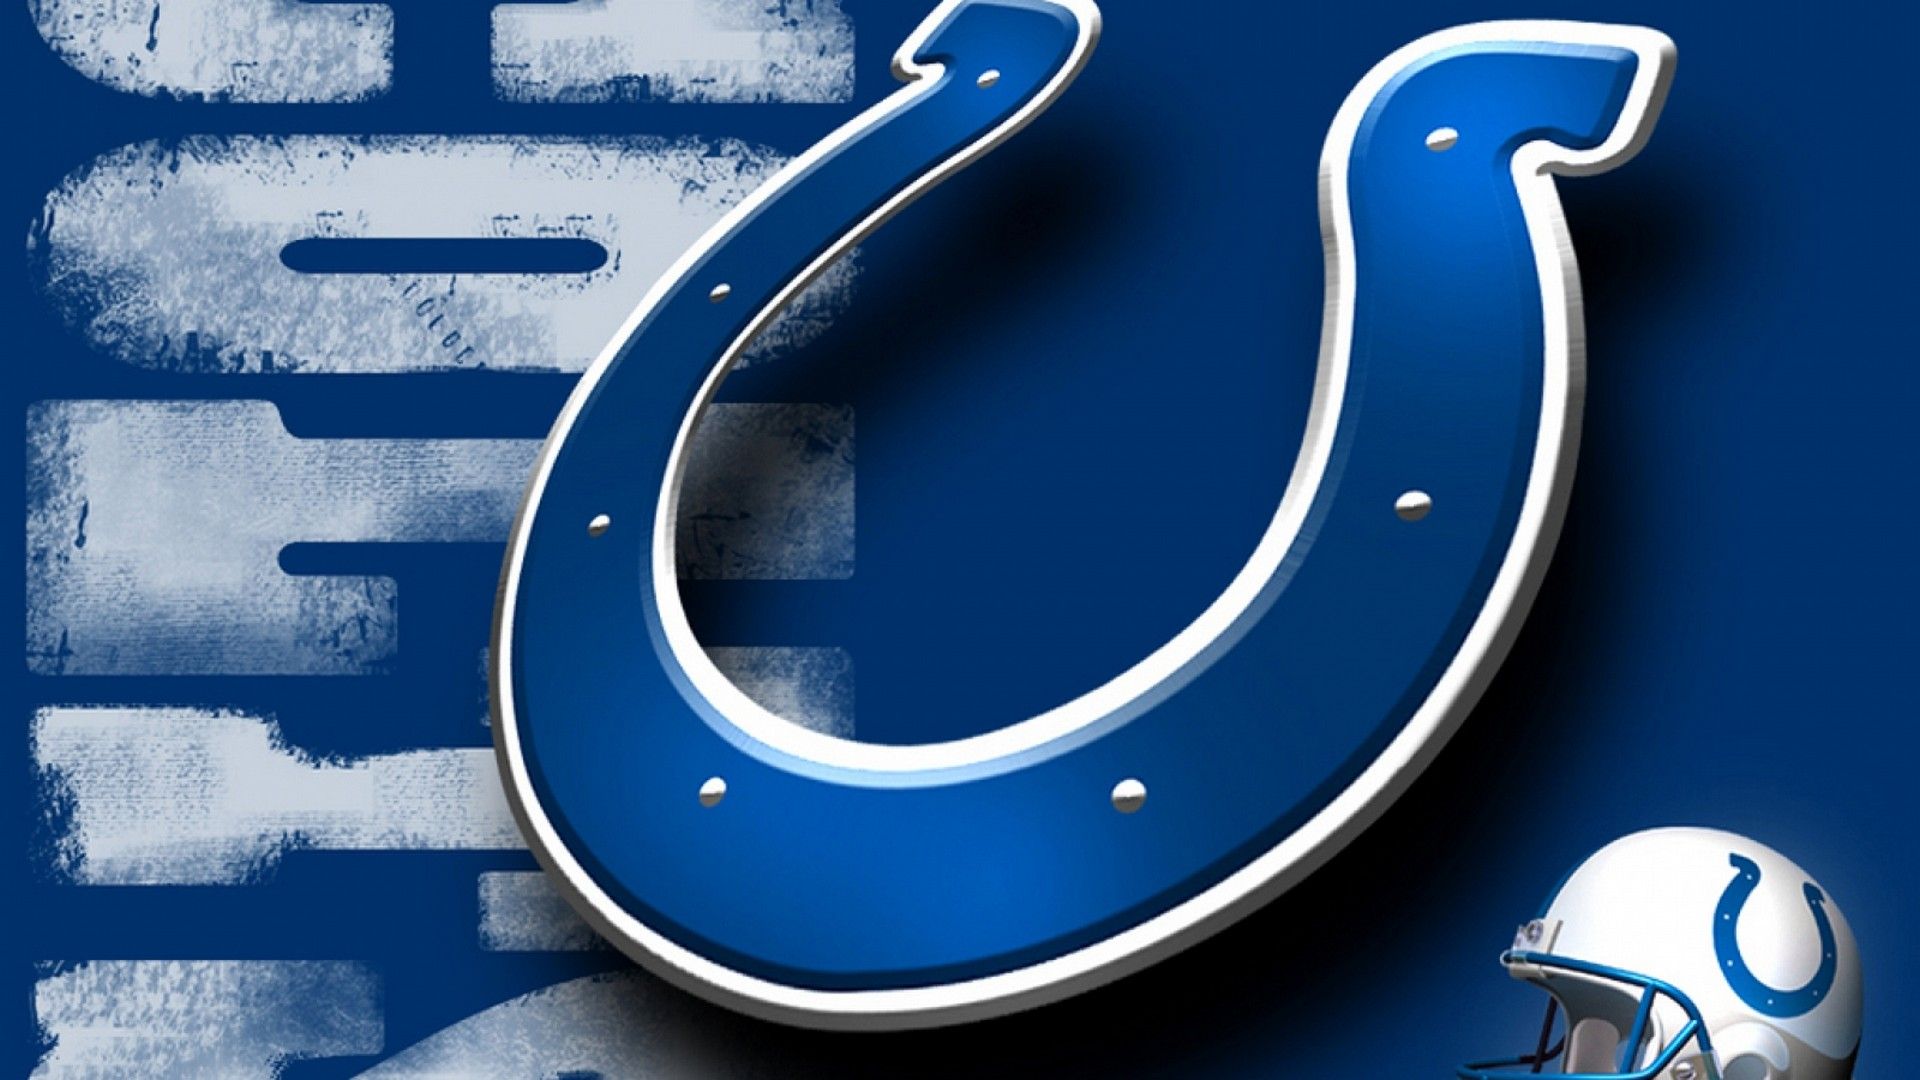 Wallpaper HD Indianapolis Colts NFL NFL Football Wallpaper